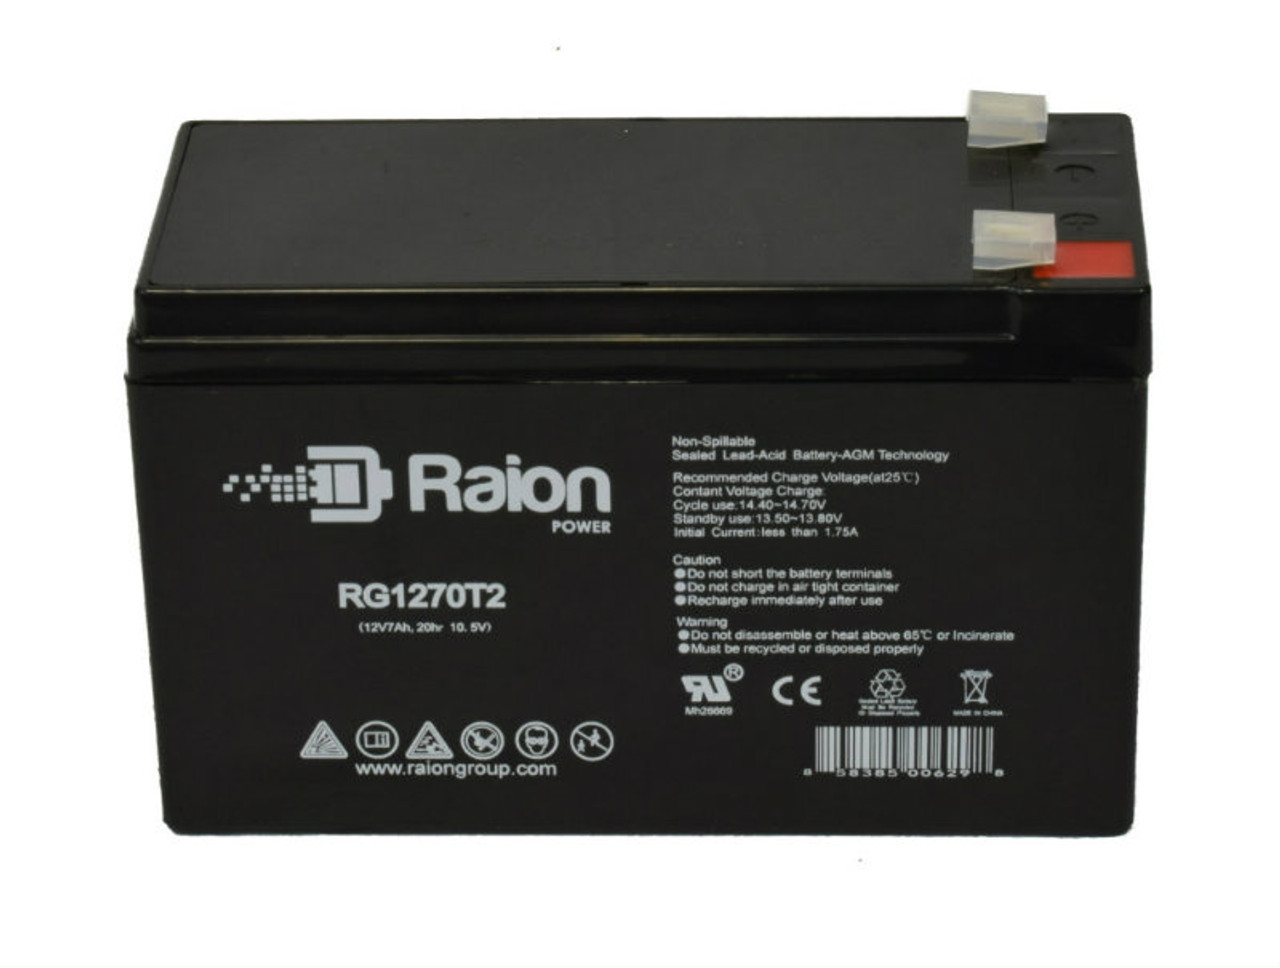 Raion Power RG1270T1 12V 7Ah Lead Acid Battery for AmeriGlide Horizon Straight Stairlift